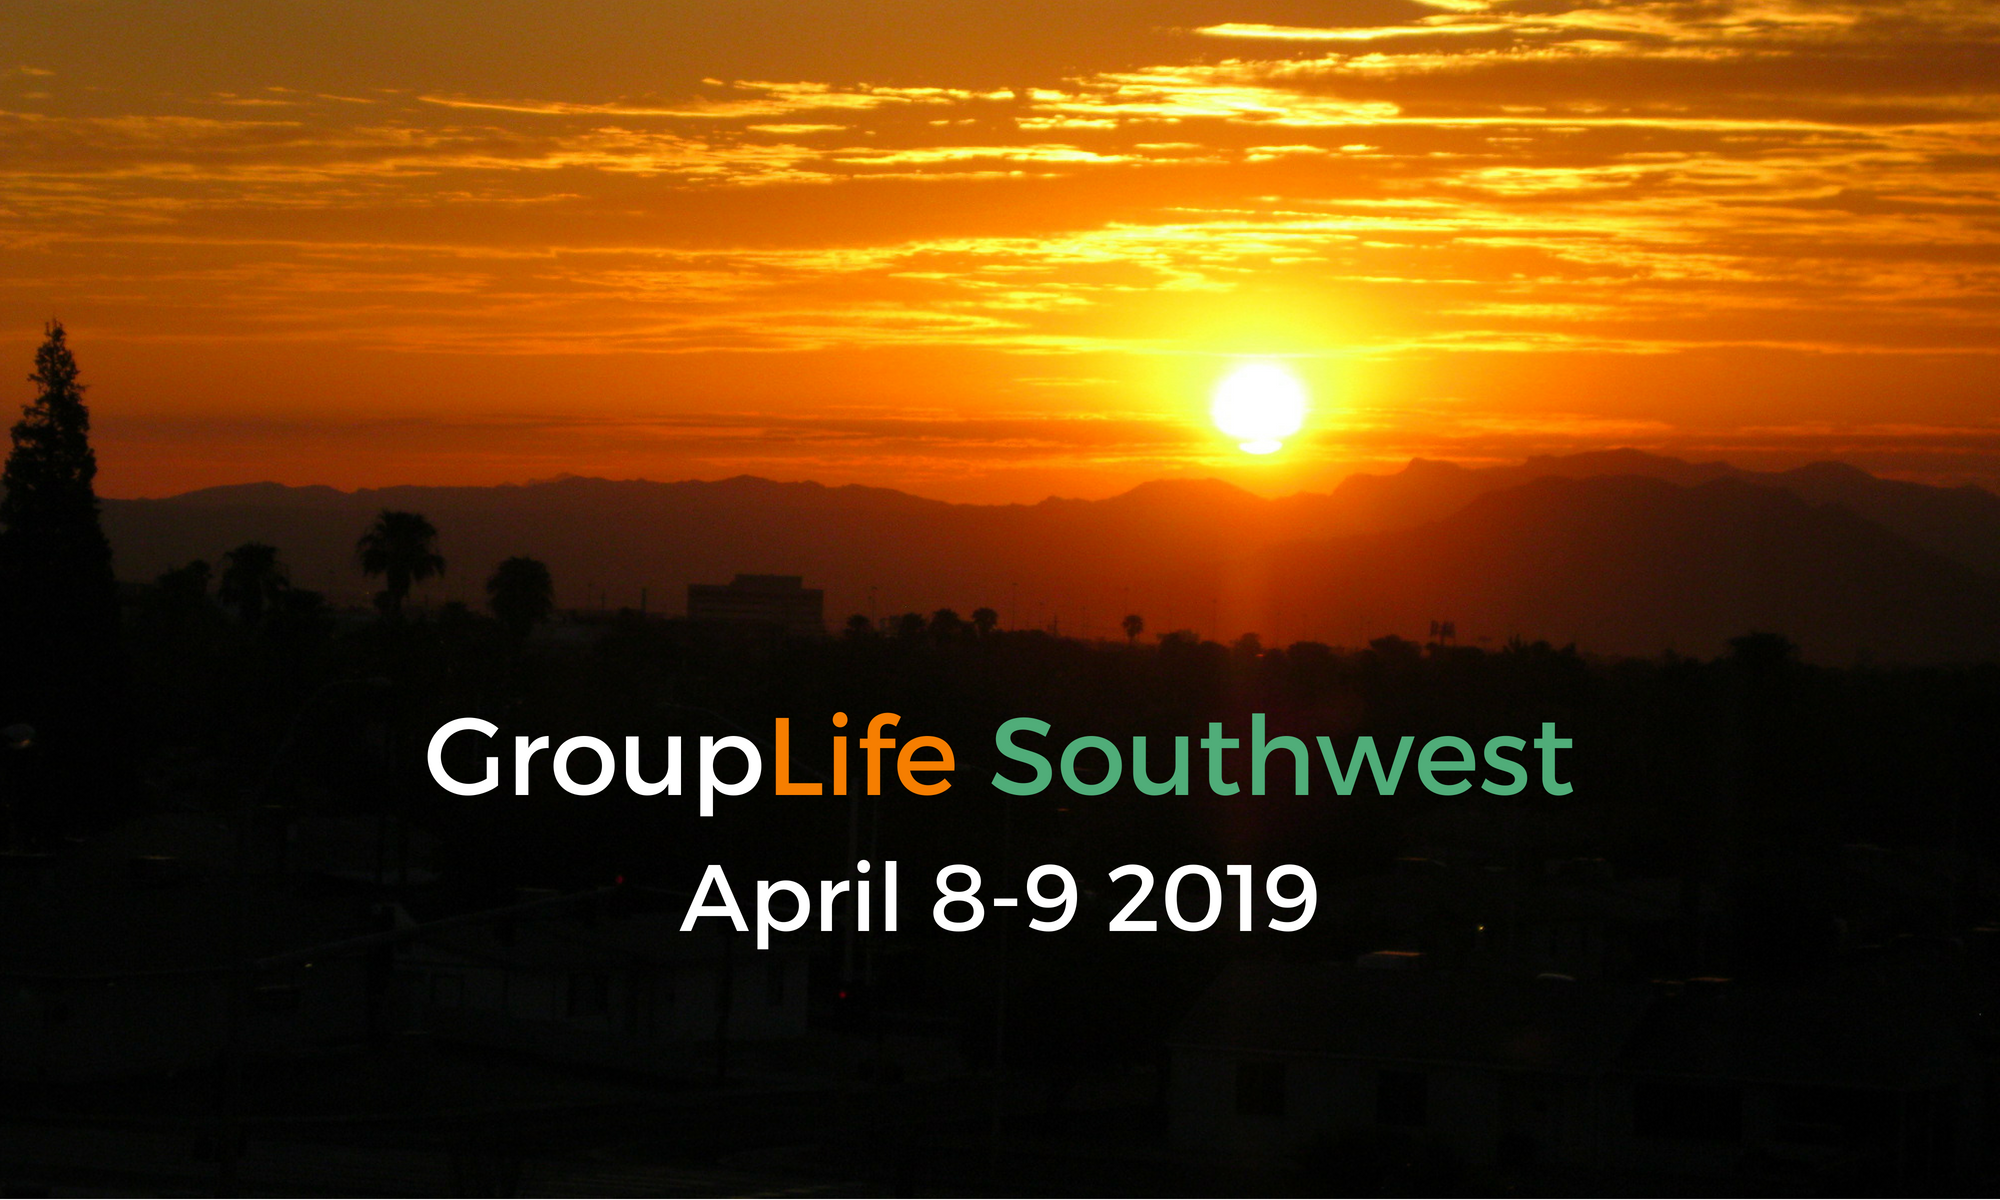 GroupLife Southwest April 8-9 2019 Header image